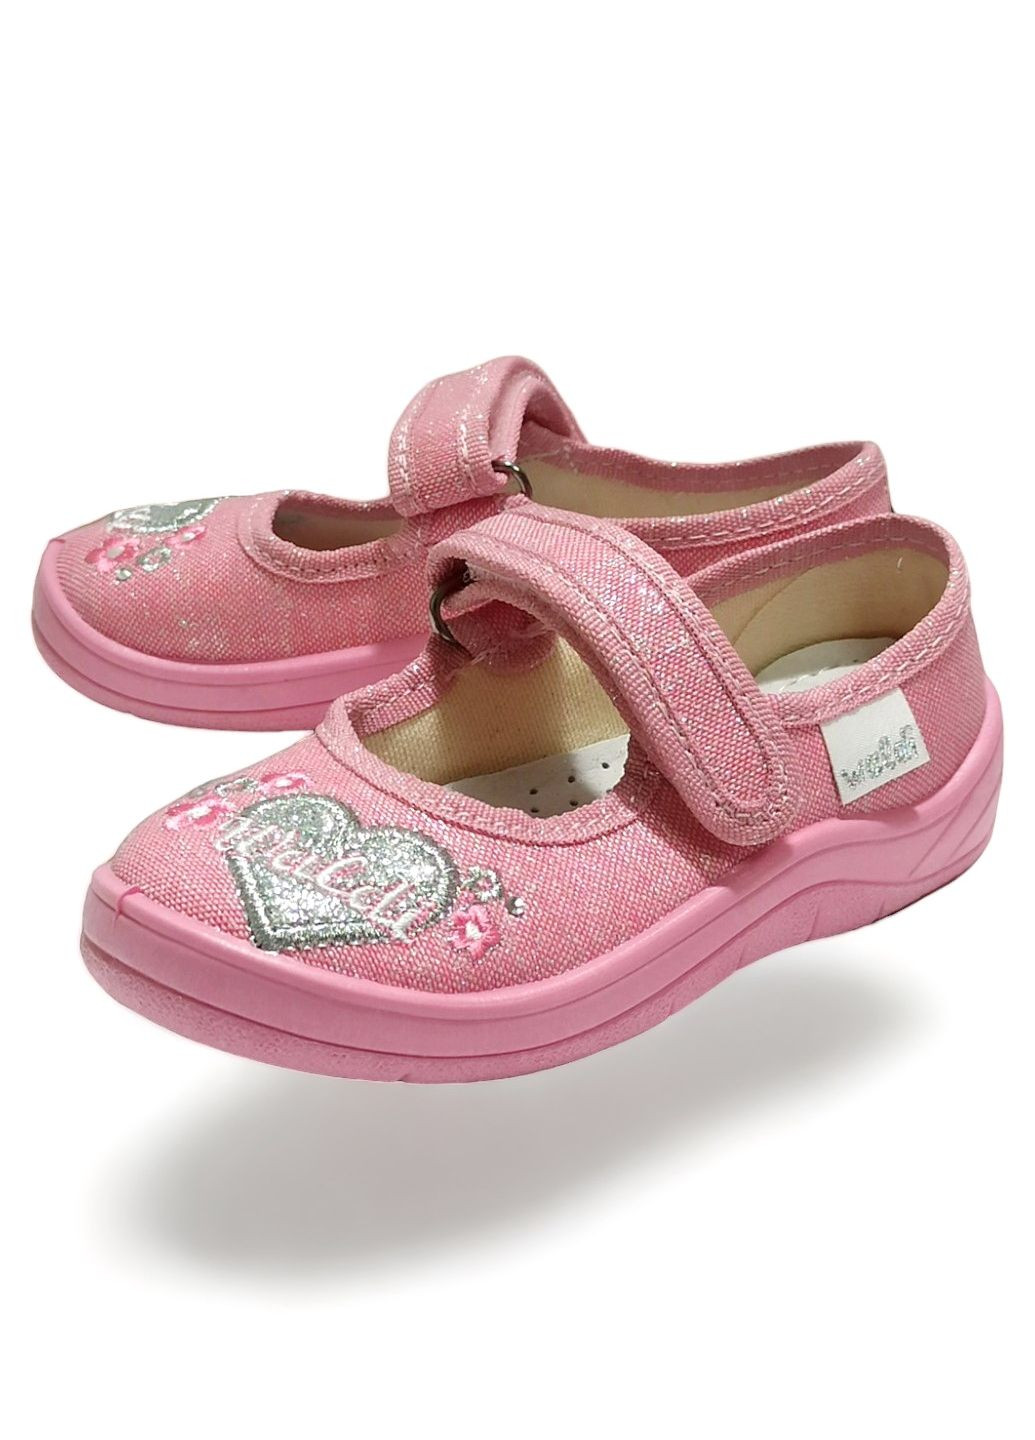 Розовые детские тапочки на девочку ортопедические валди алина сердечко розовые 24-15см Waldi с вышивкой